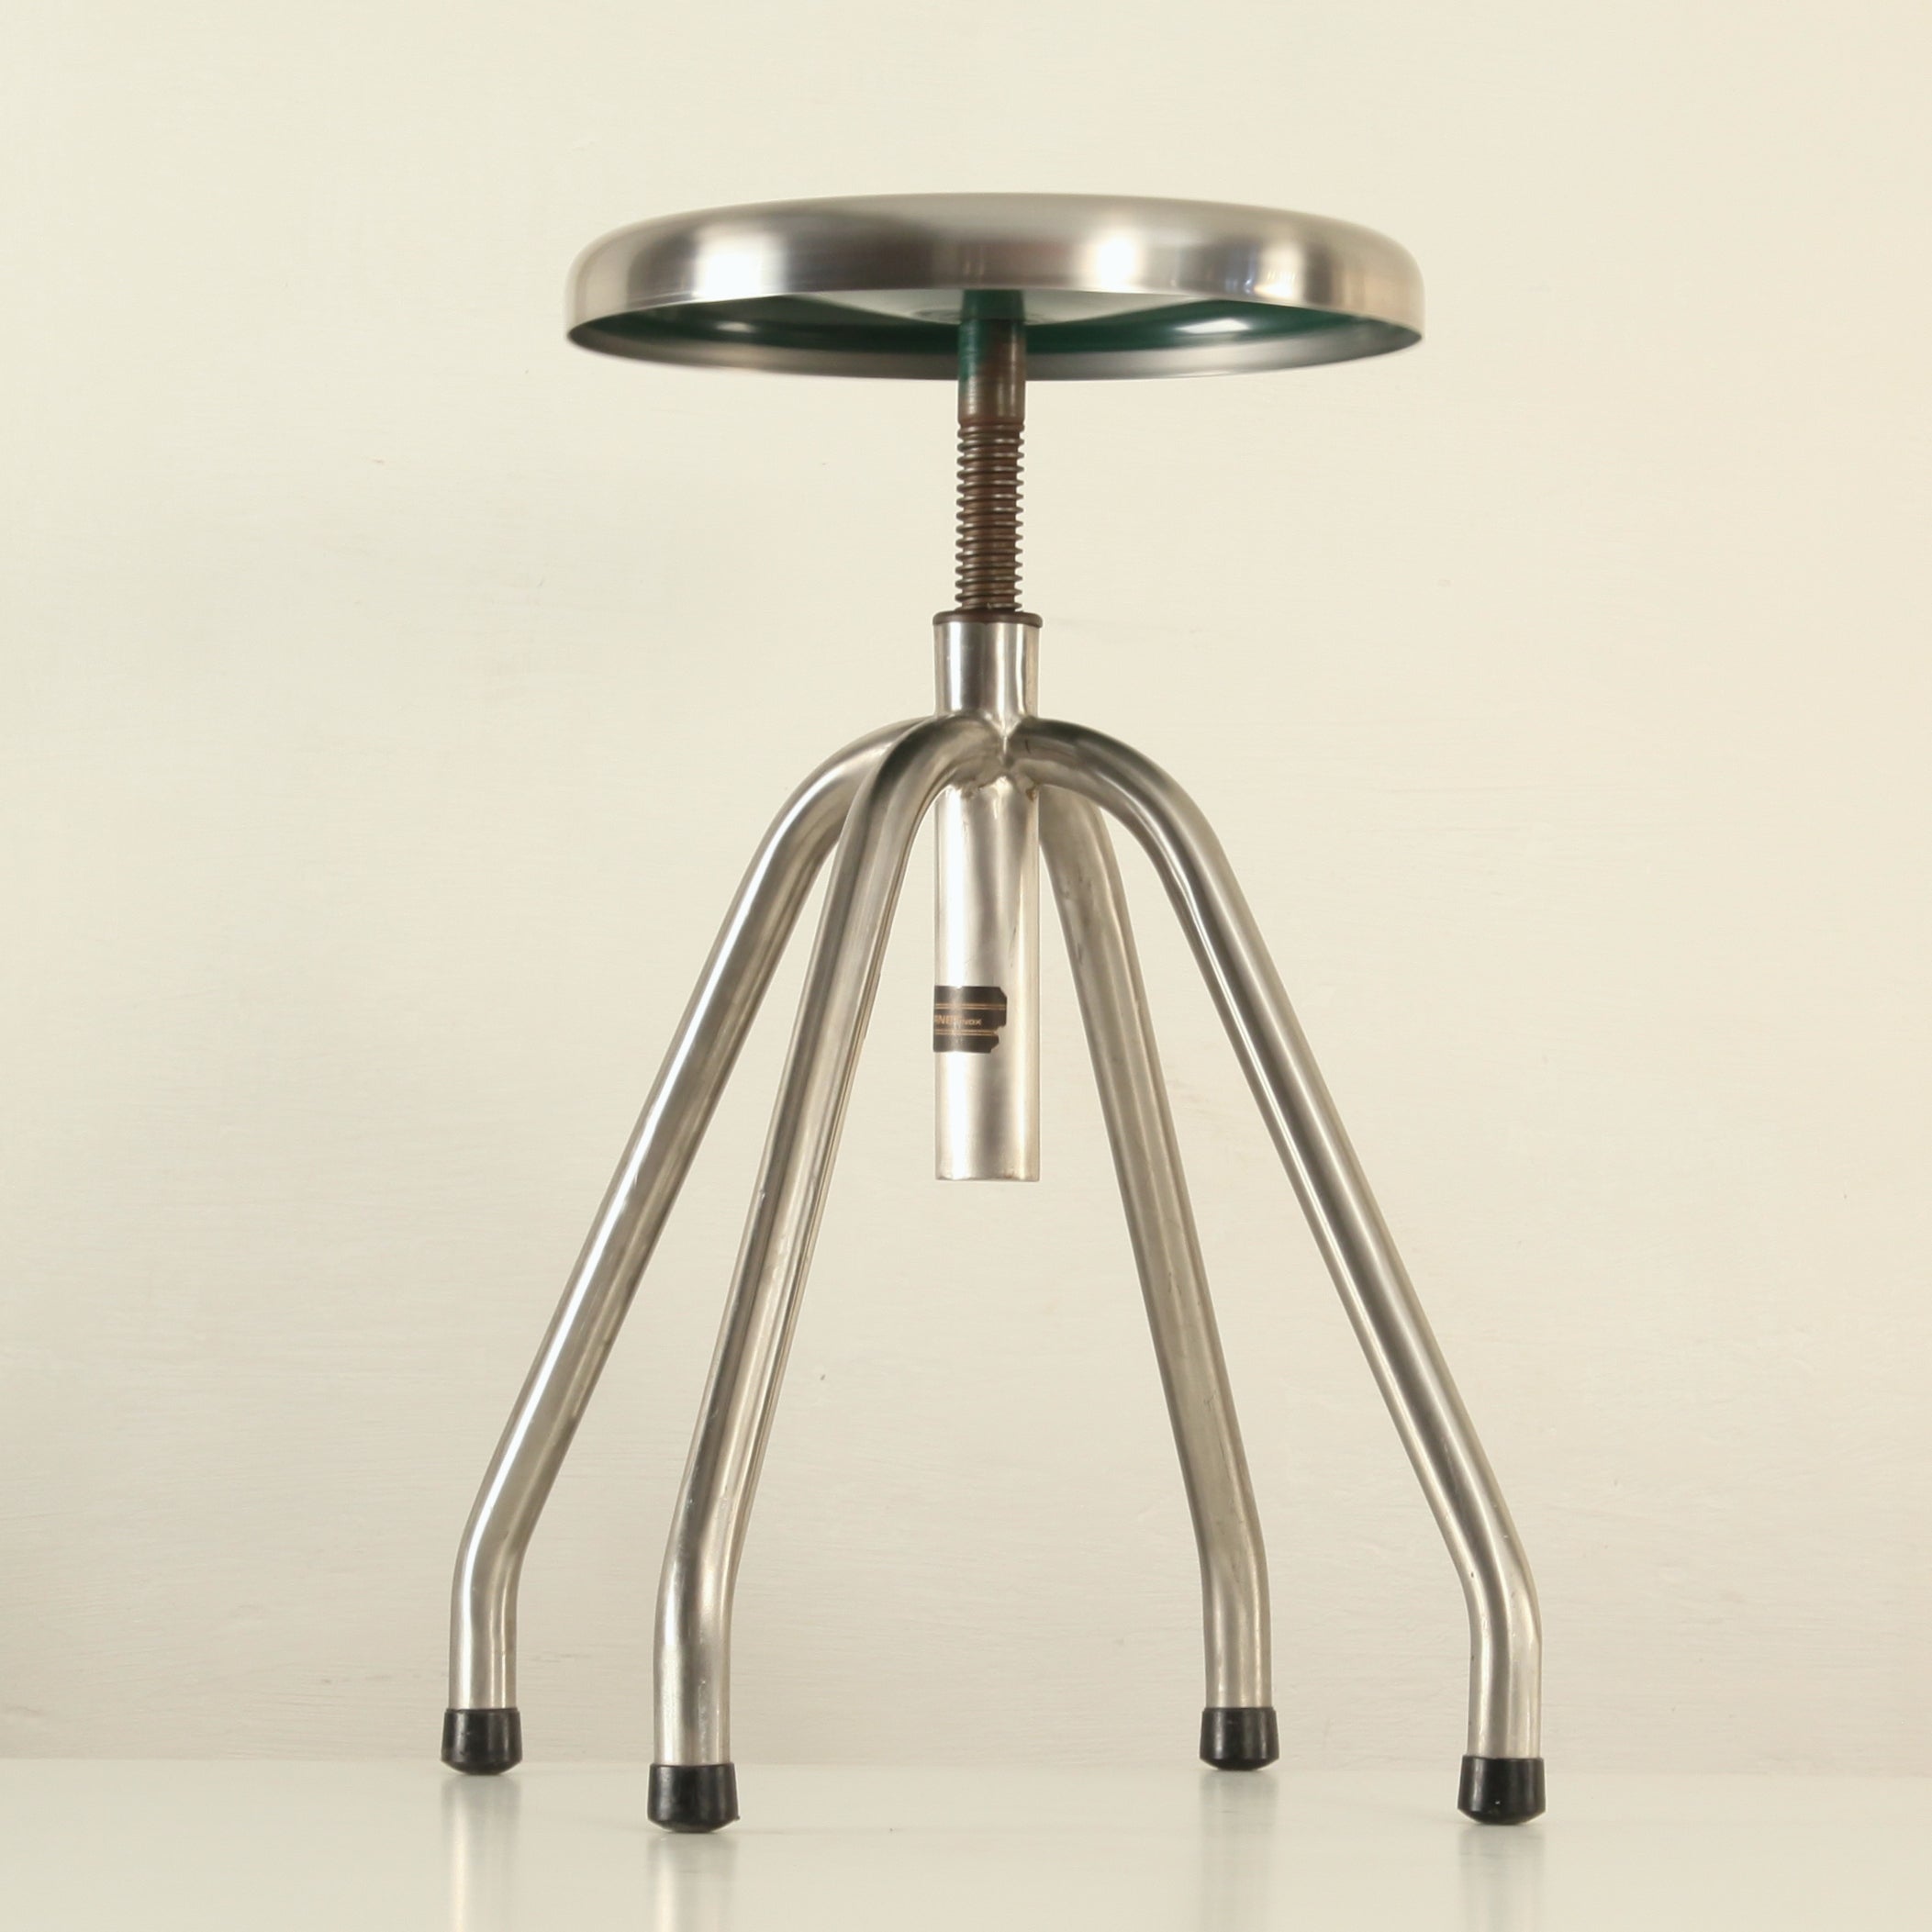 Industrial adjustable stool in stainless steel